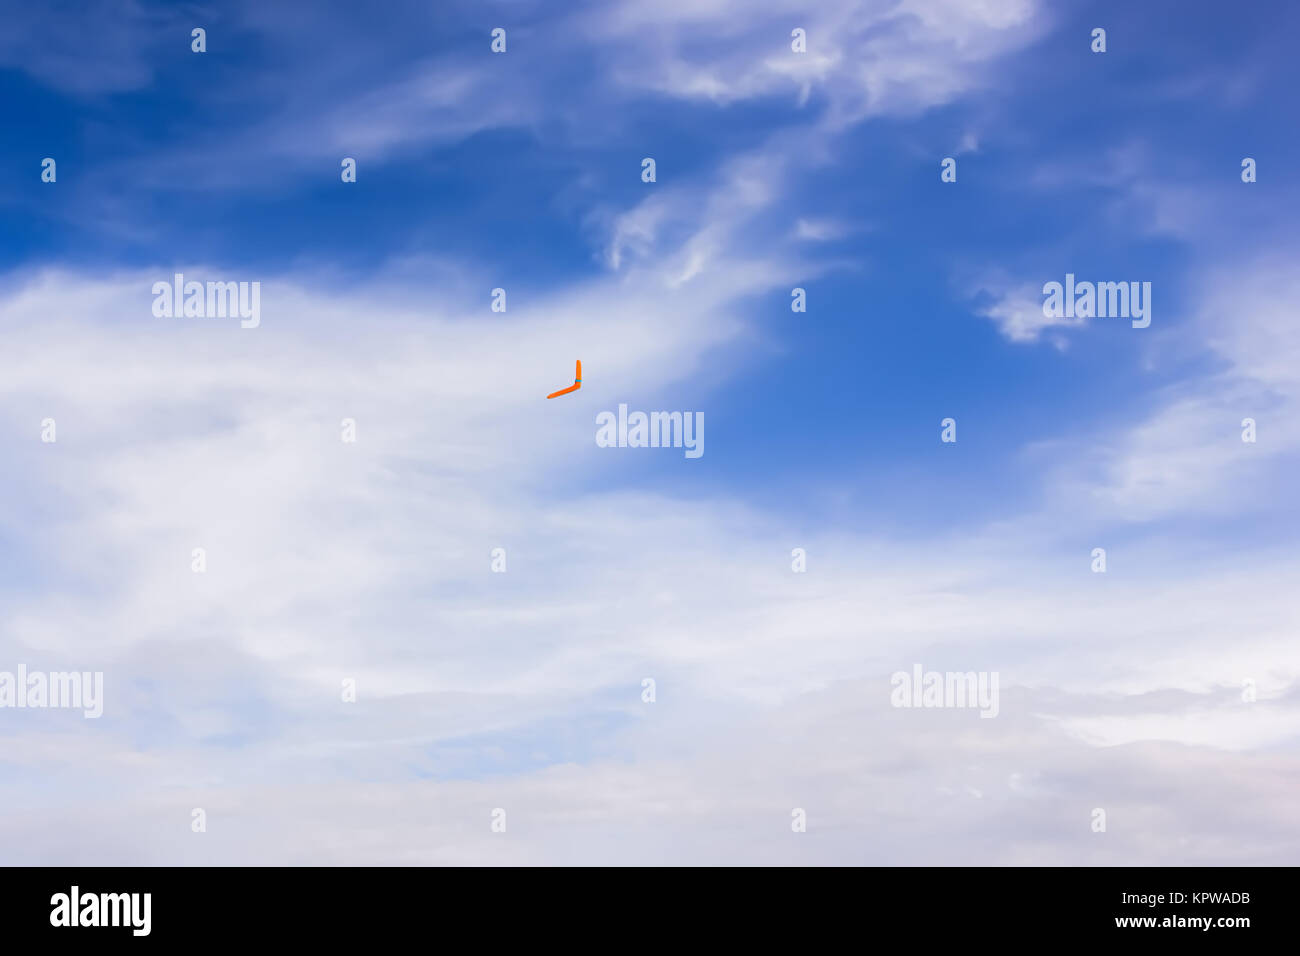 Orange boomerang flying in the sky Stock Photo